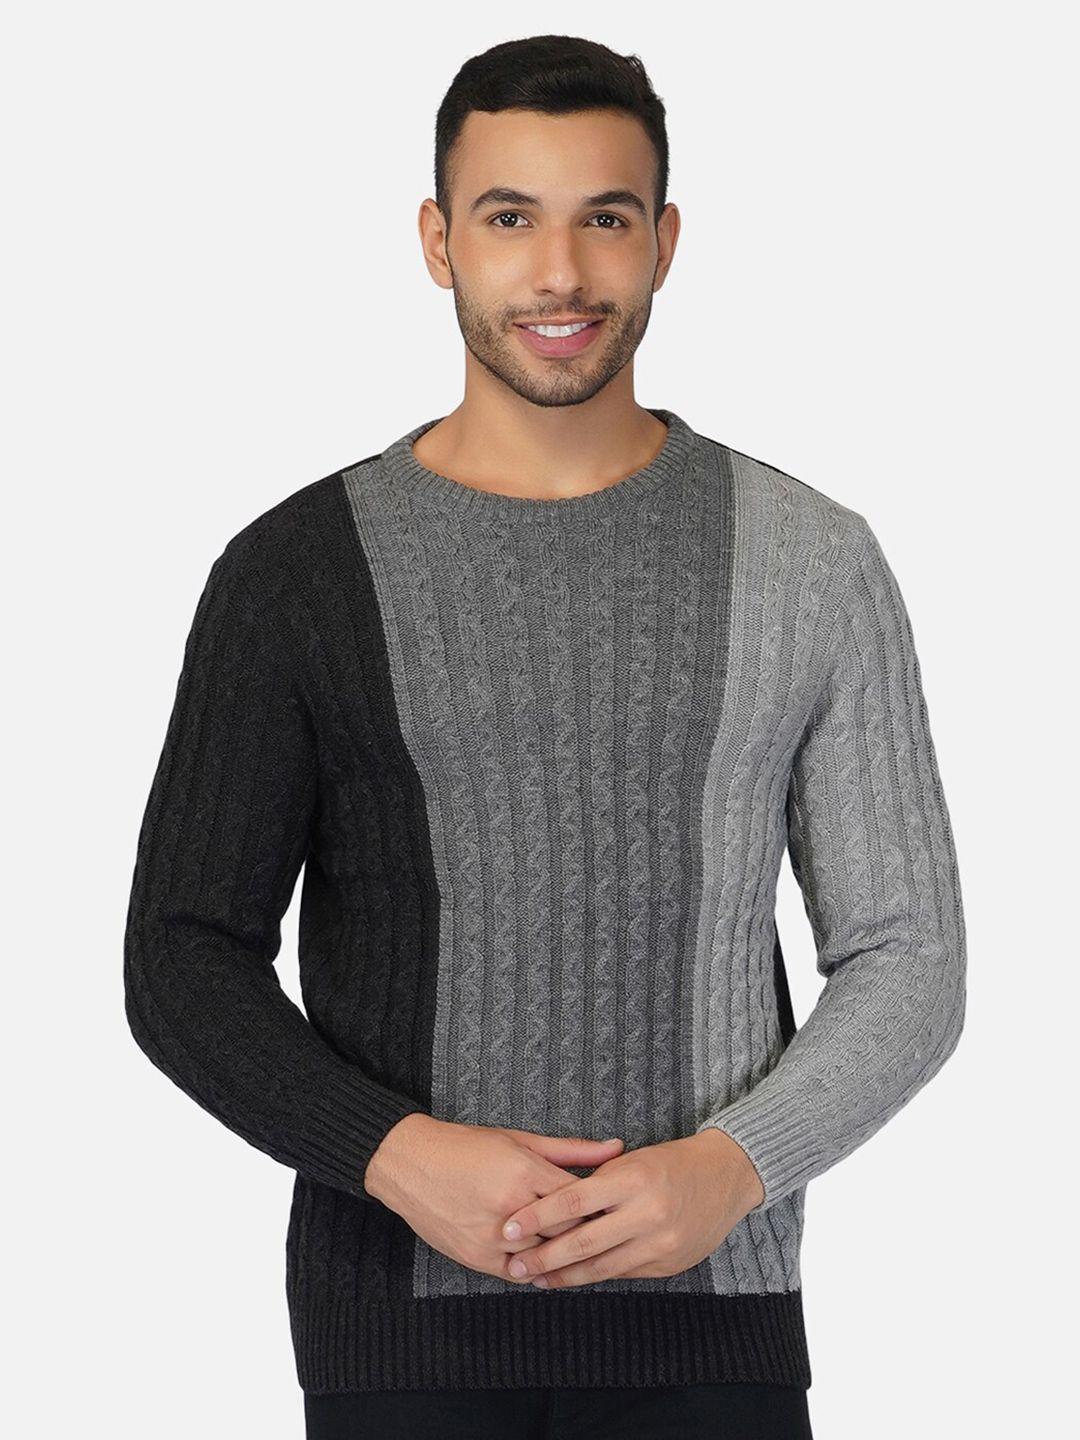 joe-hazel-men-grey-&-black-colourblocked-pullover